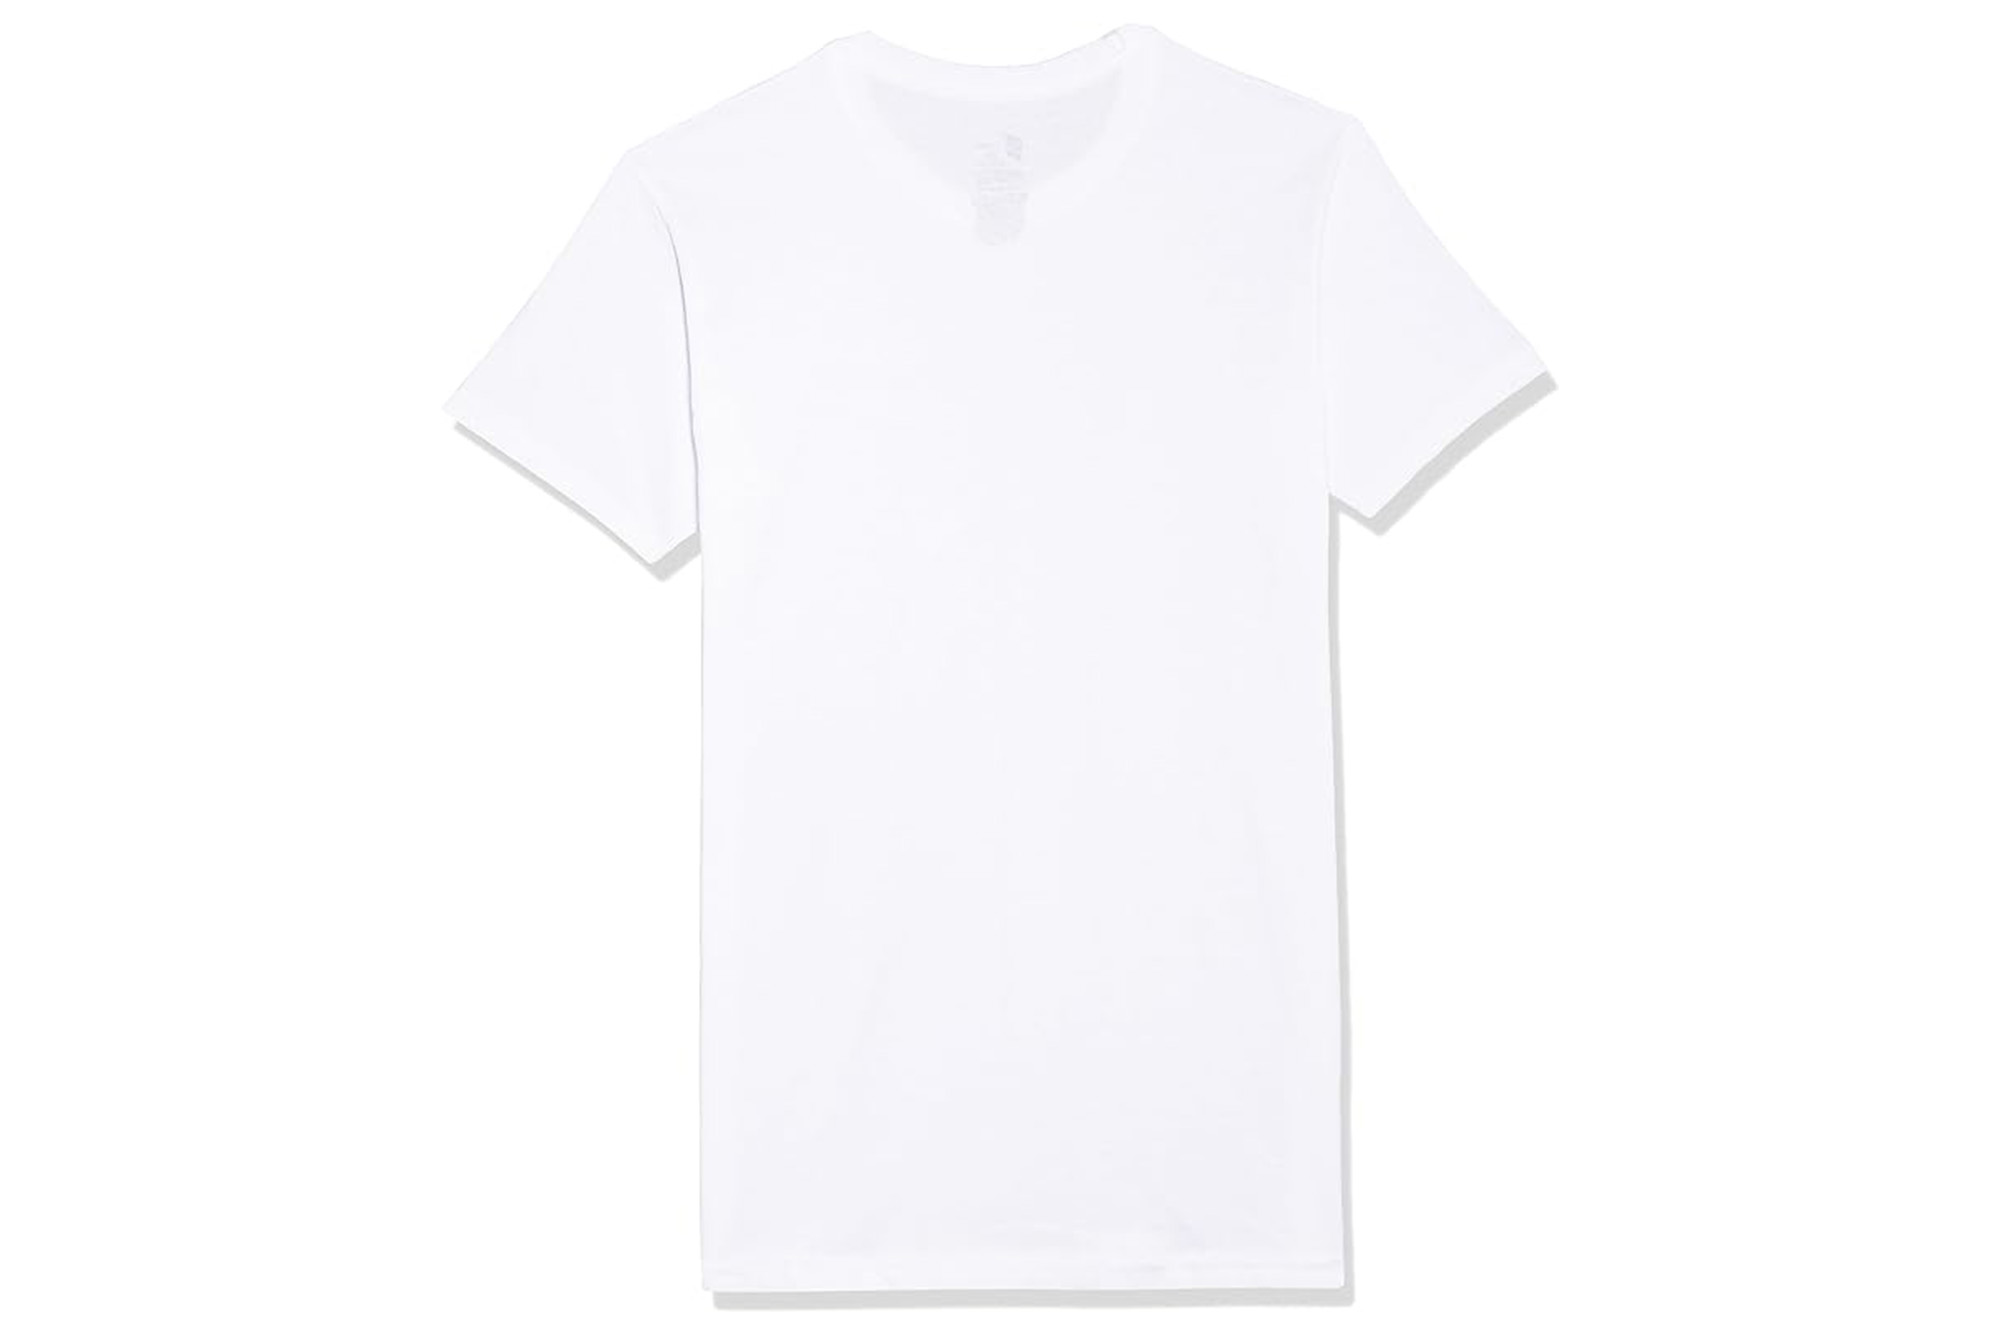 Hanes Herren-Unterhemden, geruchshemmende, feuchtigkeitsableitende T-Shirts, Multipacks